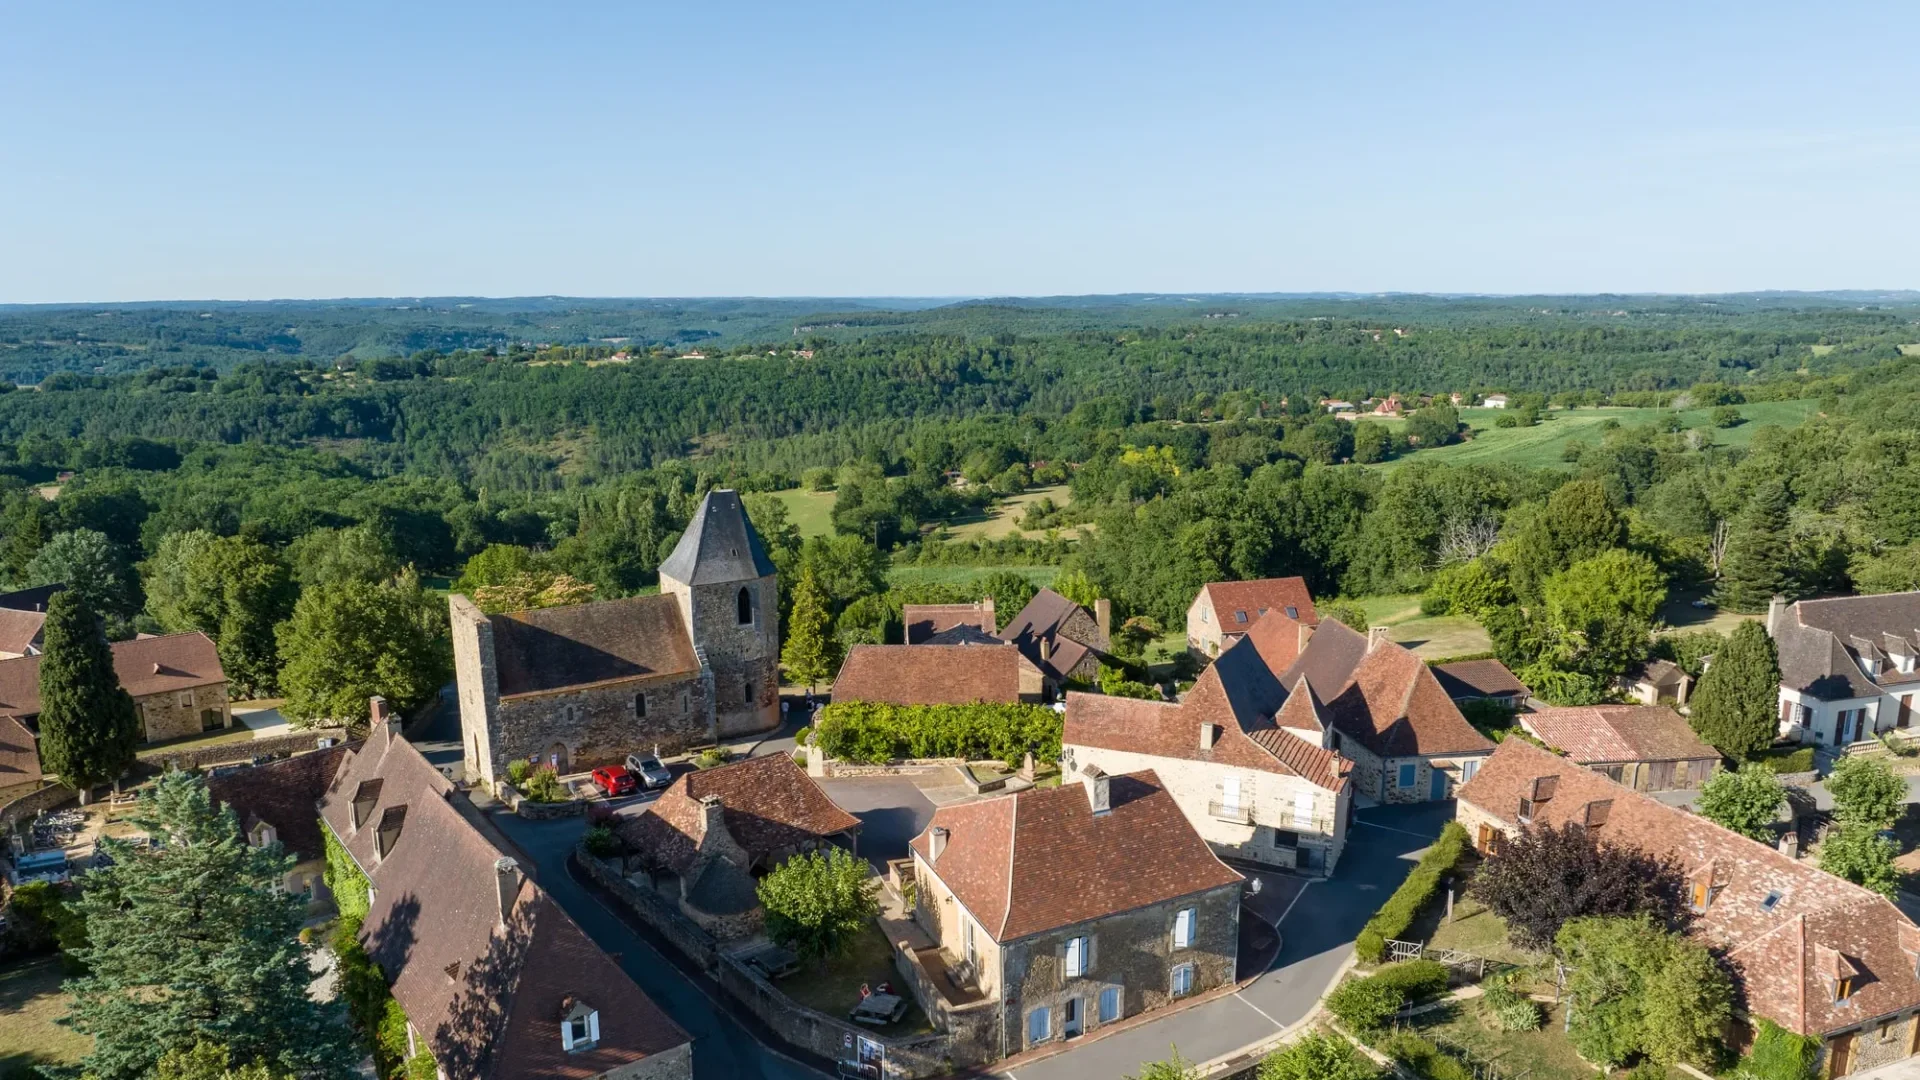 Dorf Audrix vom Himmel aus gesehen ©Instapades OT Lascaux Dordogne